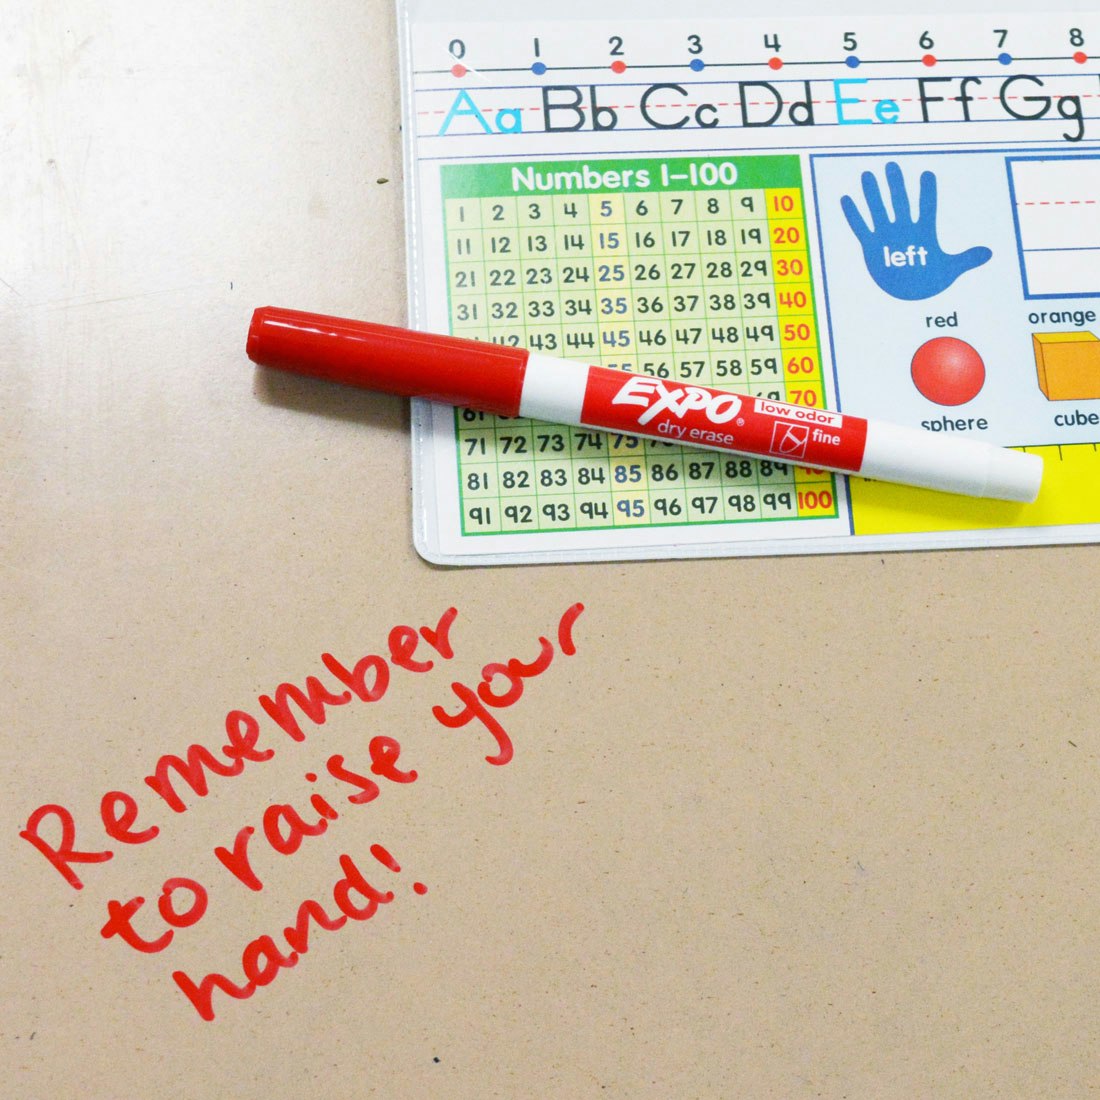 reminder-written-on-desk-from-teacher-in-red-fine-expo.jpg